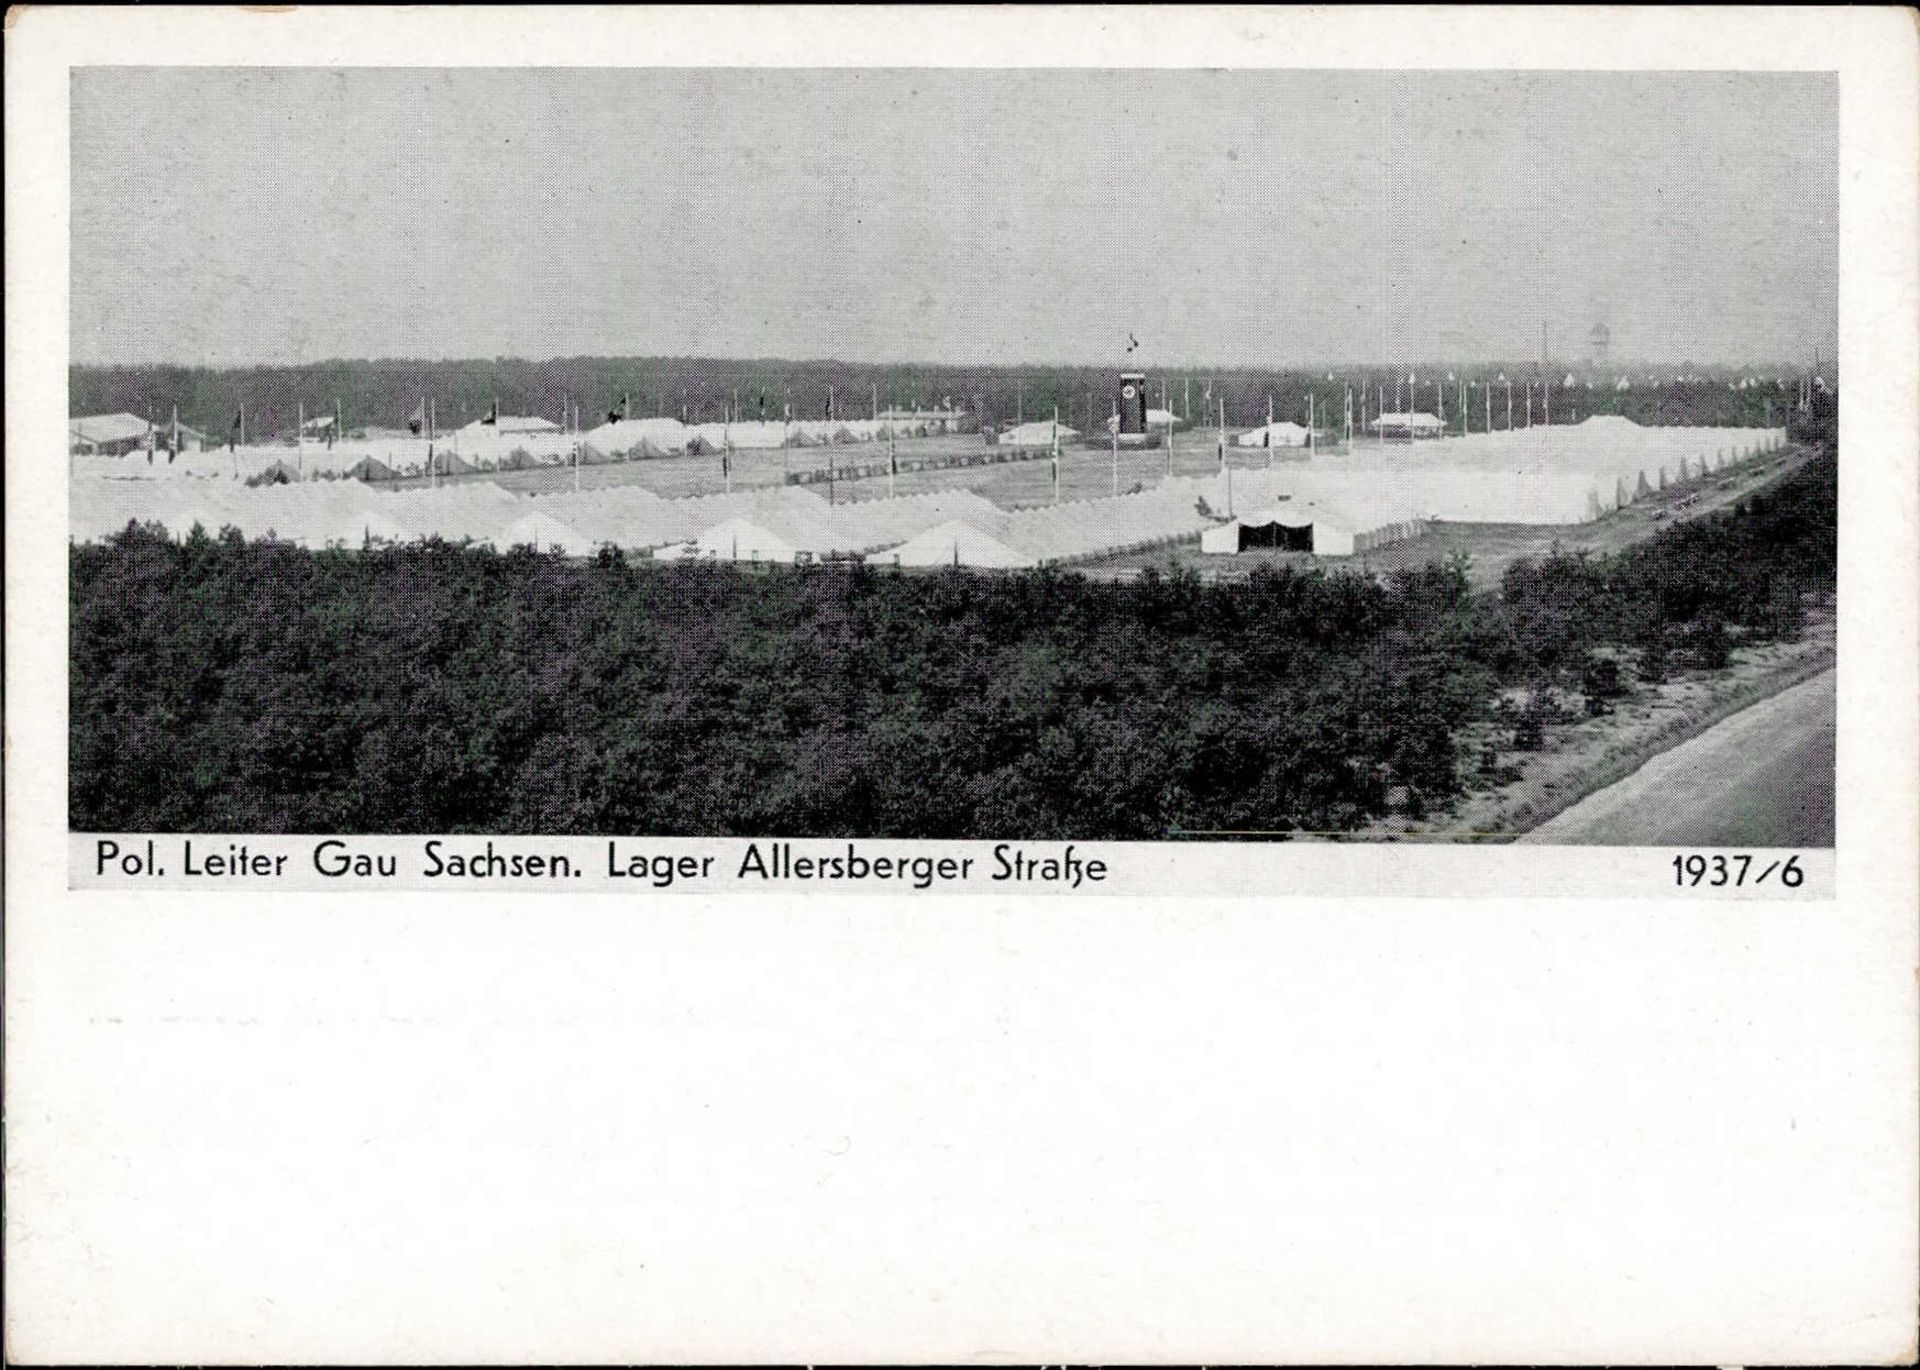 REICHSPARTEITAG NÜRNBERG WK II - Intra 1937/6 Pol.Leiter Gau Sachsen Lager Allersberger Strasse